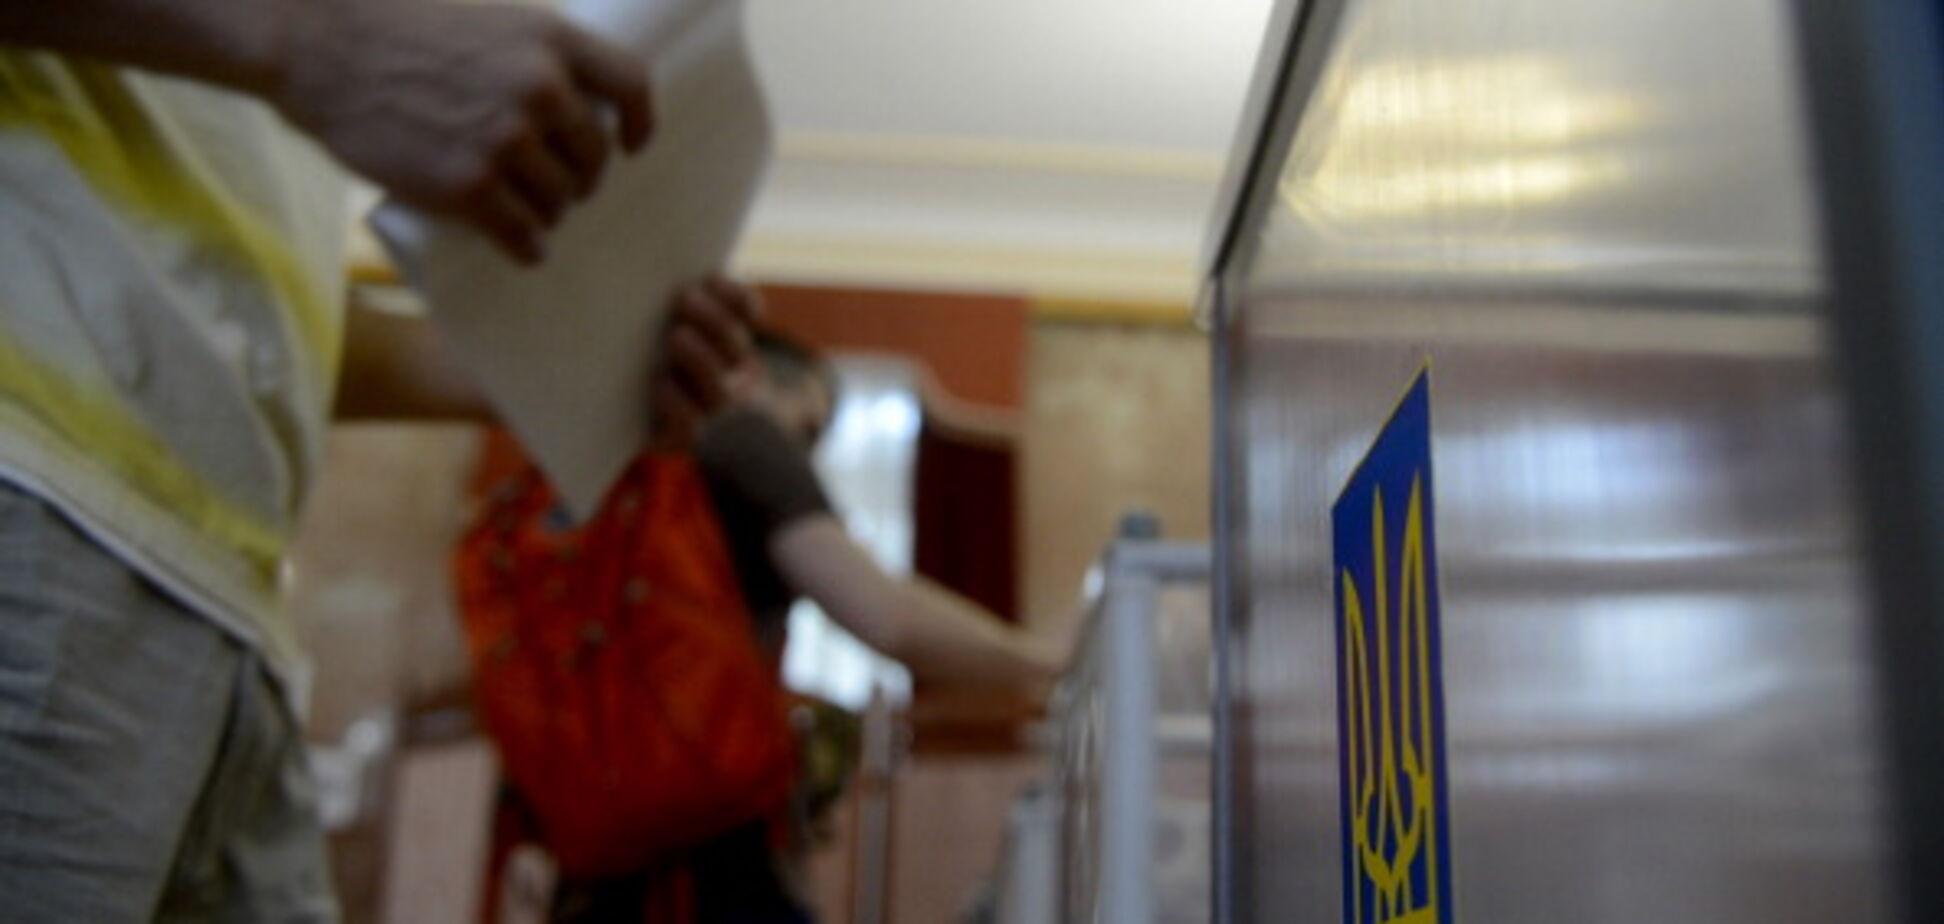 Відразу 8 партій: стало відомо, кого українці готові вибрати в Раду